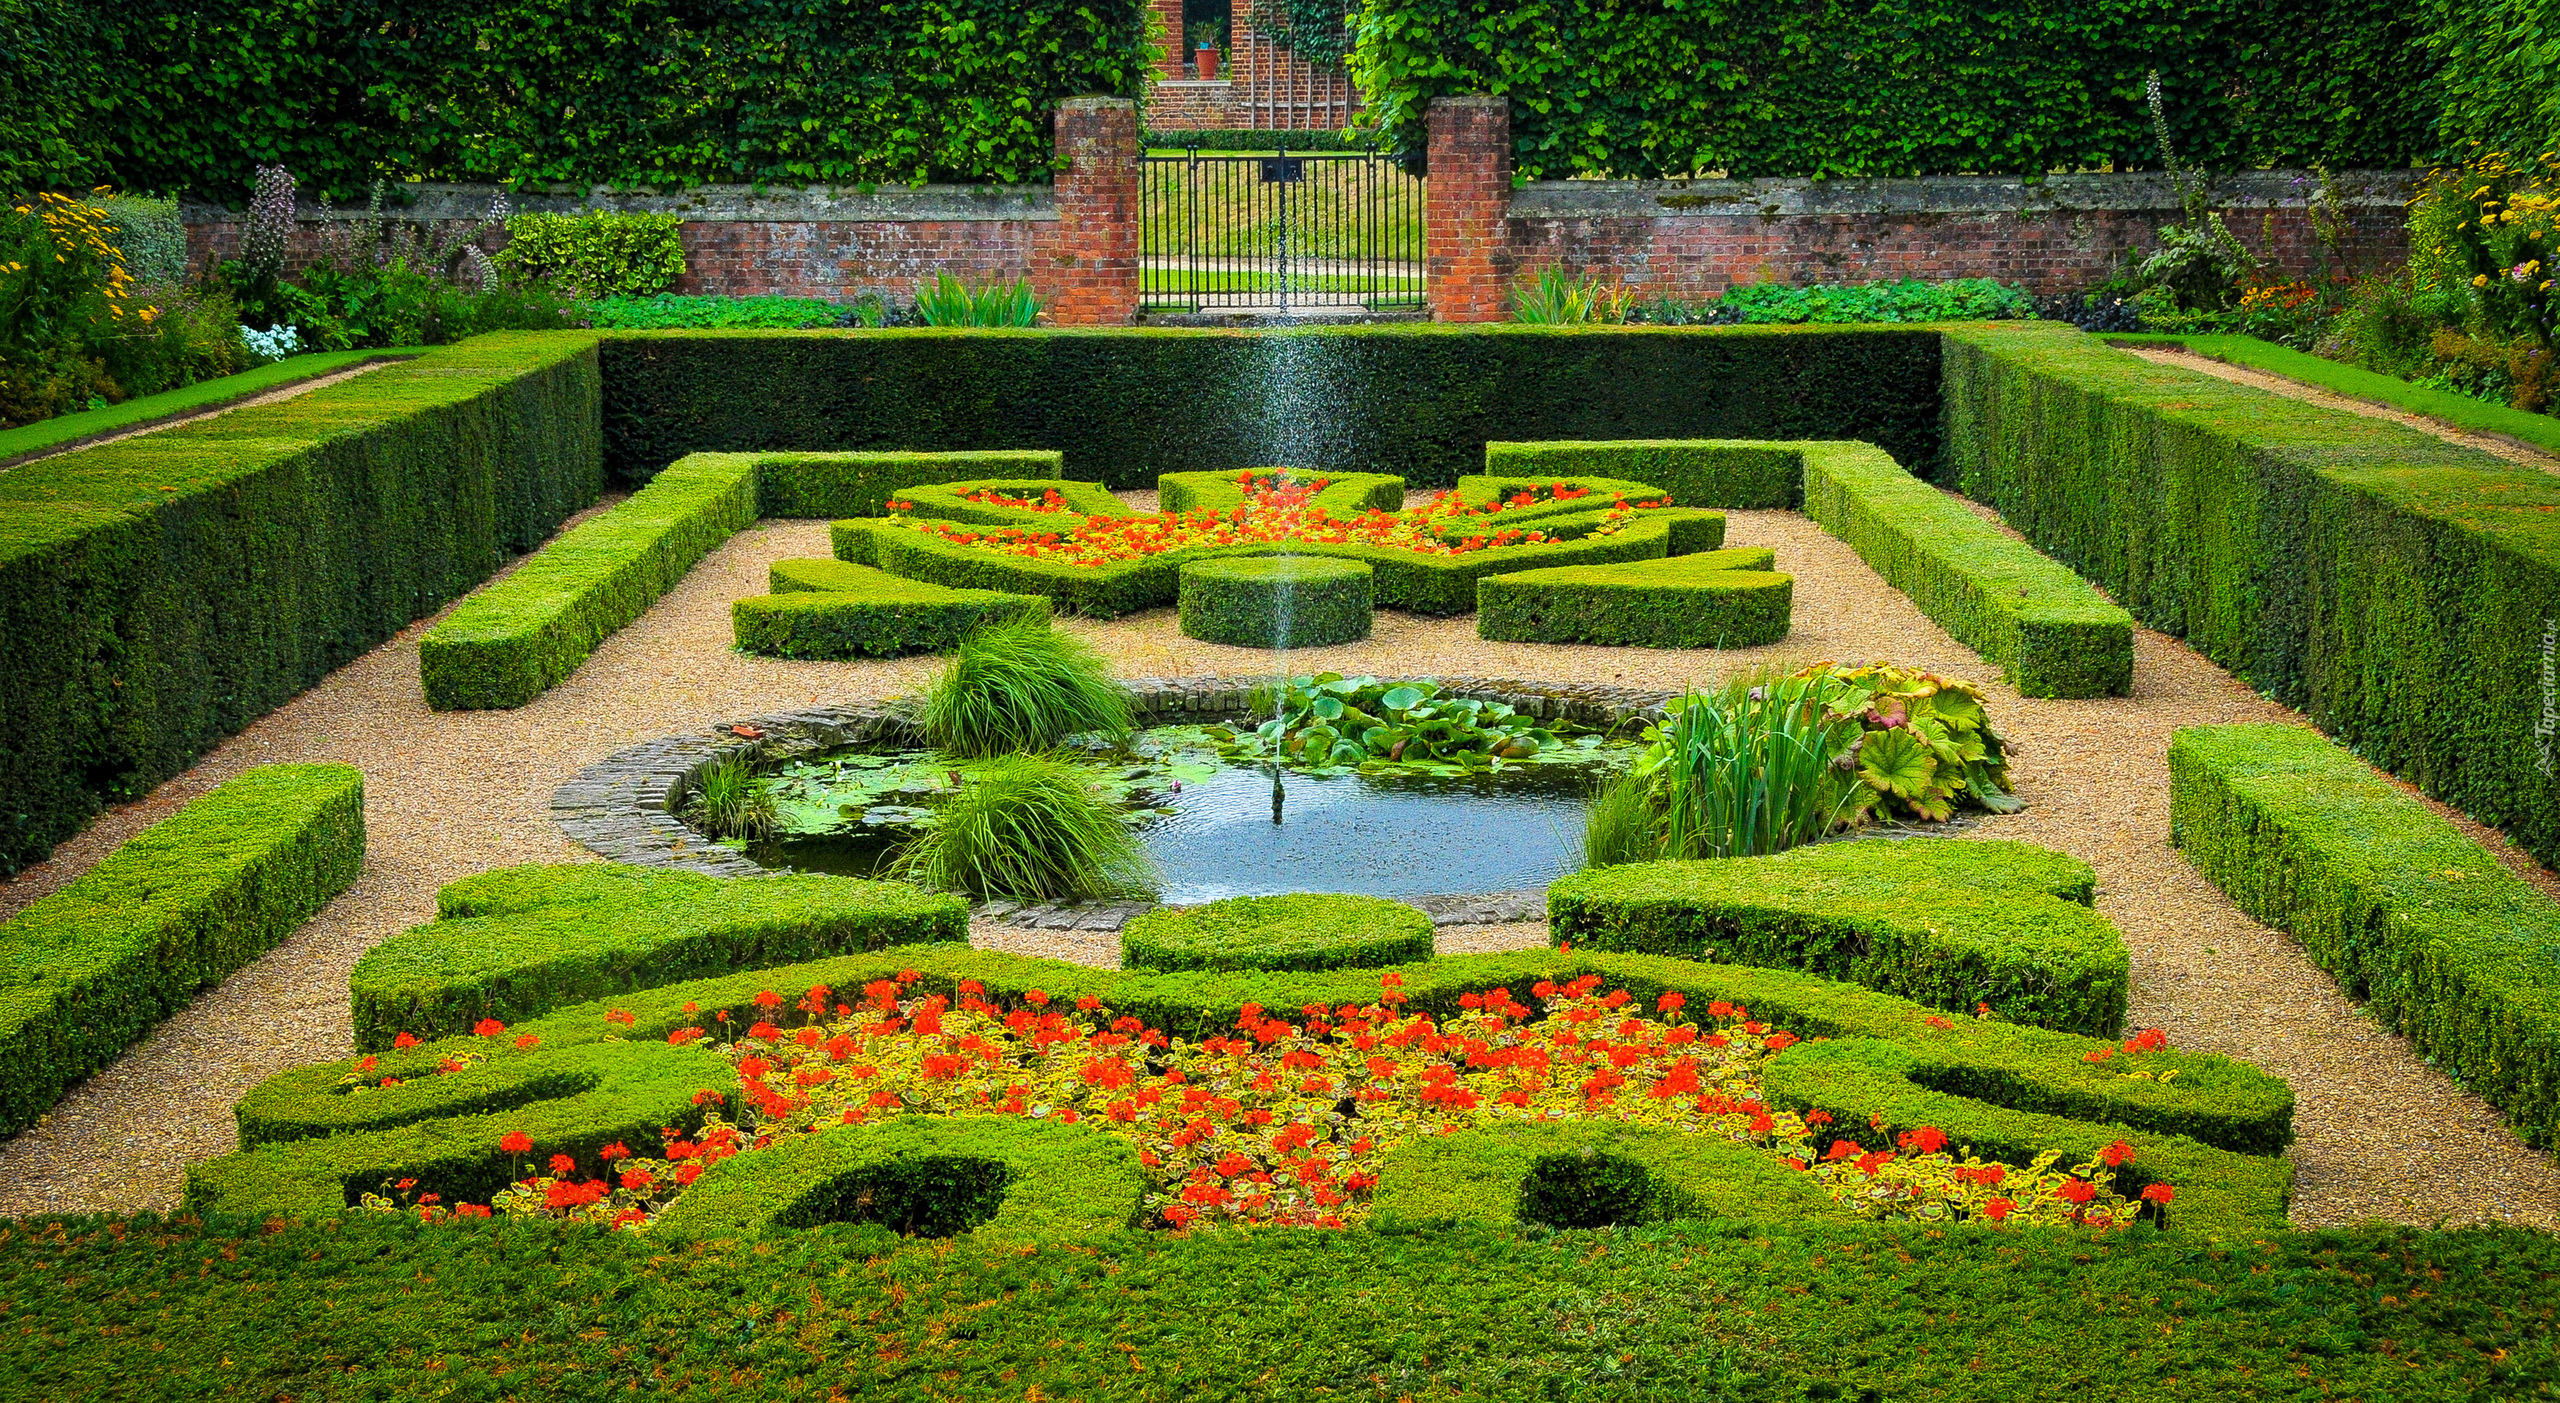 Ogród, Żywopłot, Brama, Rośliny, Kwiaty, Fontanna, Hampton Court, East Molesey, Londyn, Anglia